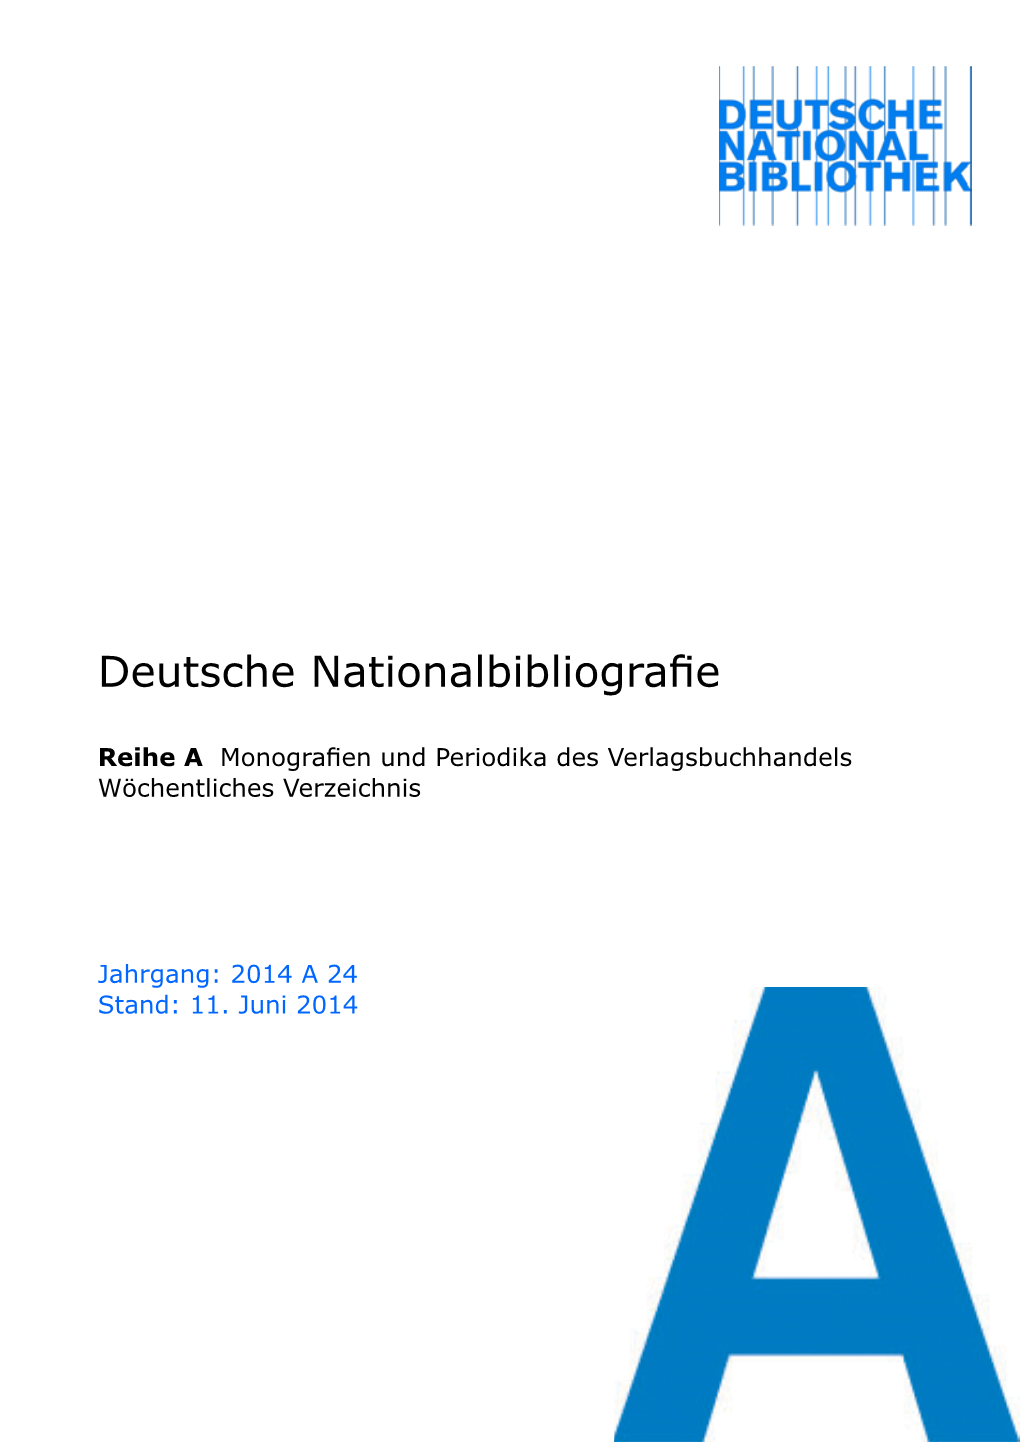 Deutsche Nationalbibliografie 2014 a 24